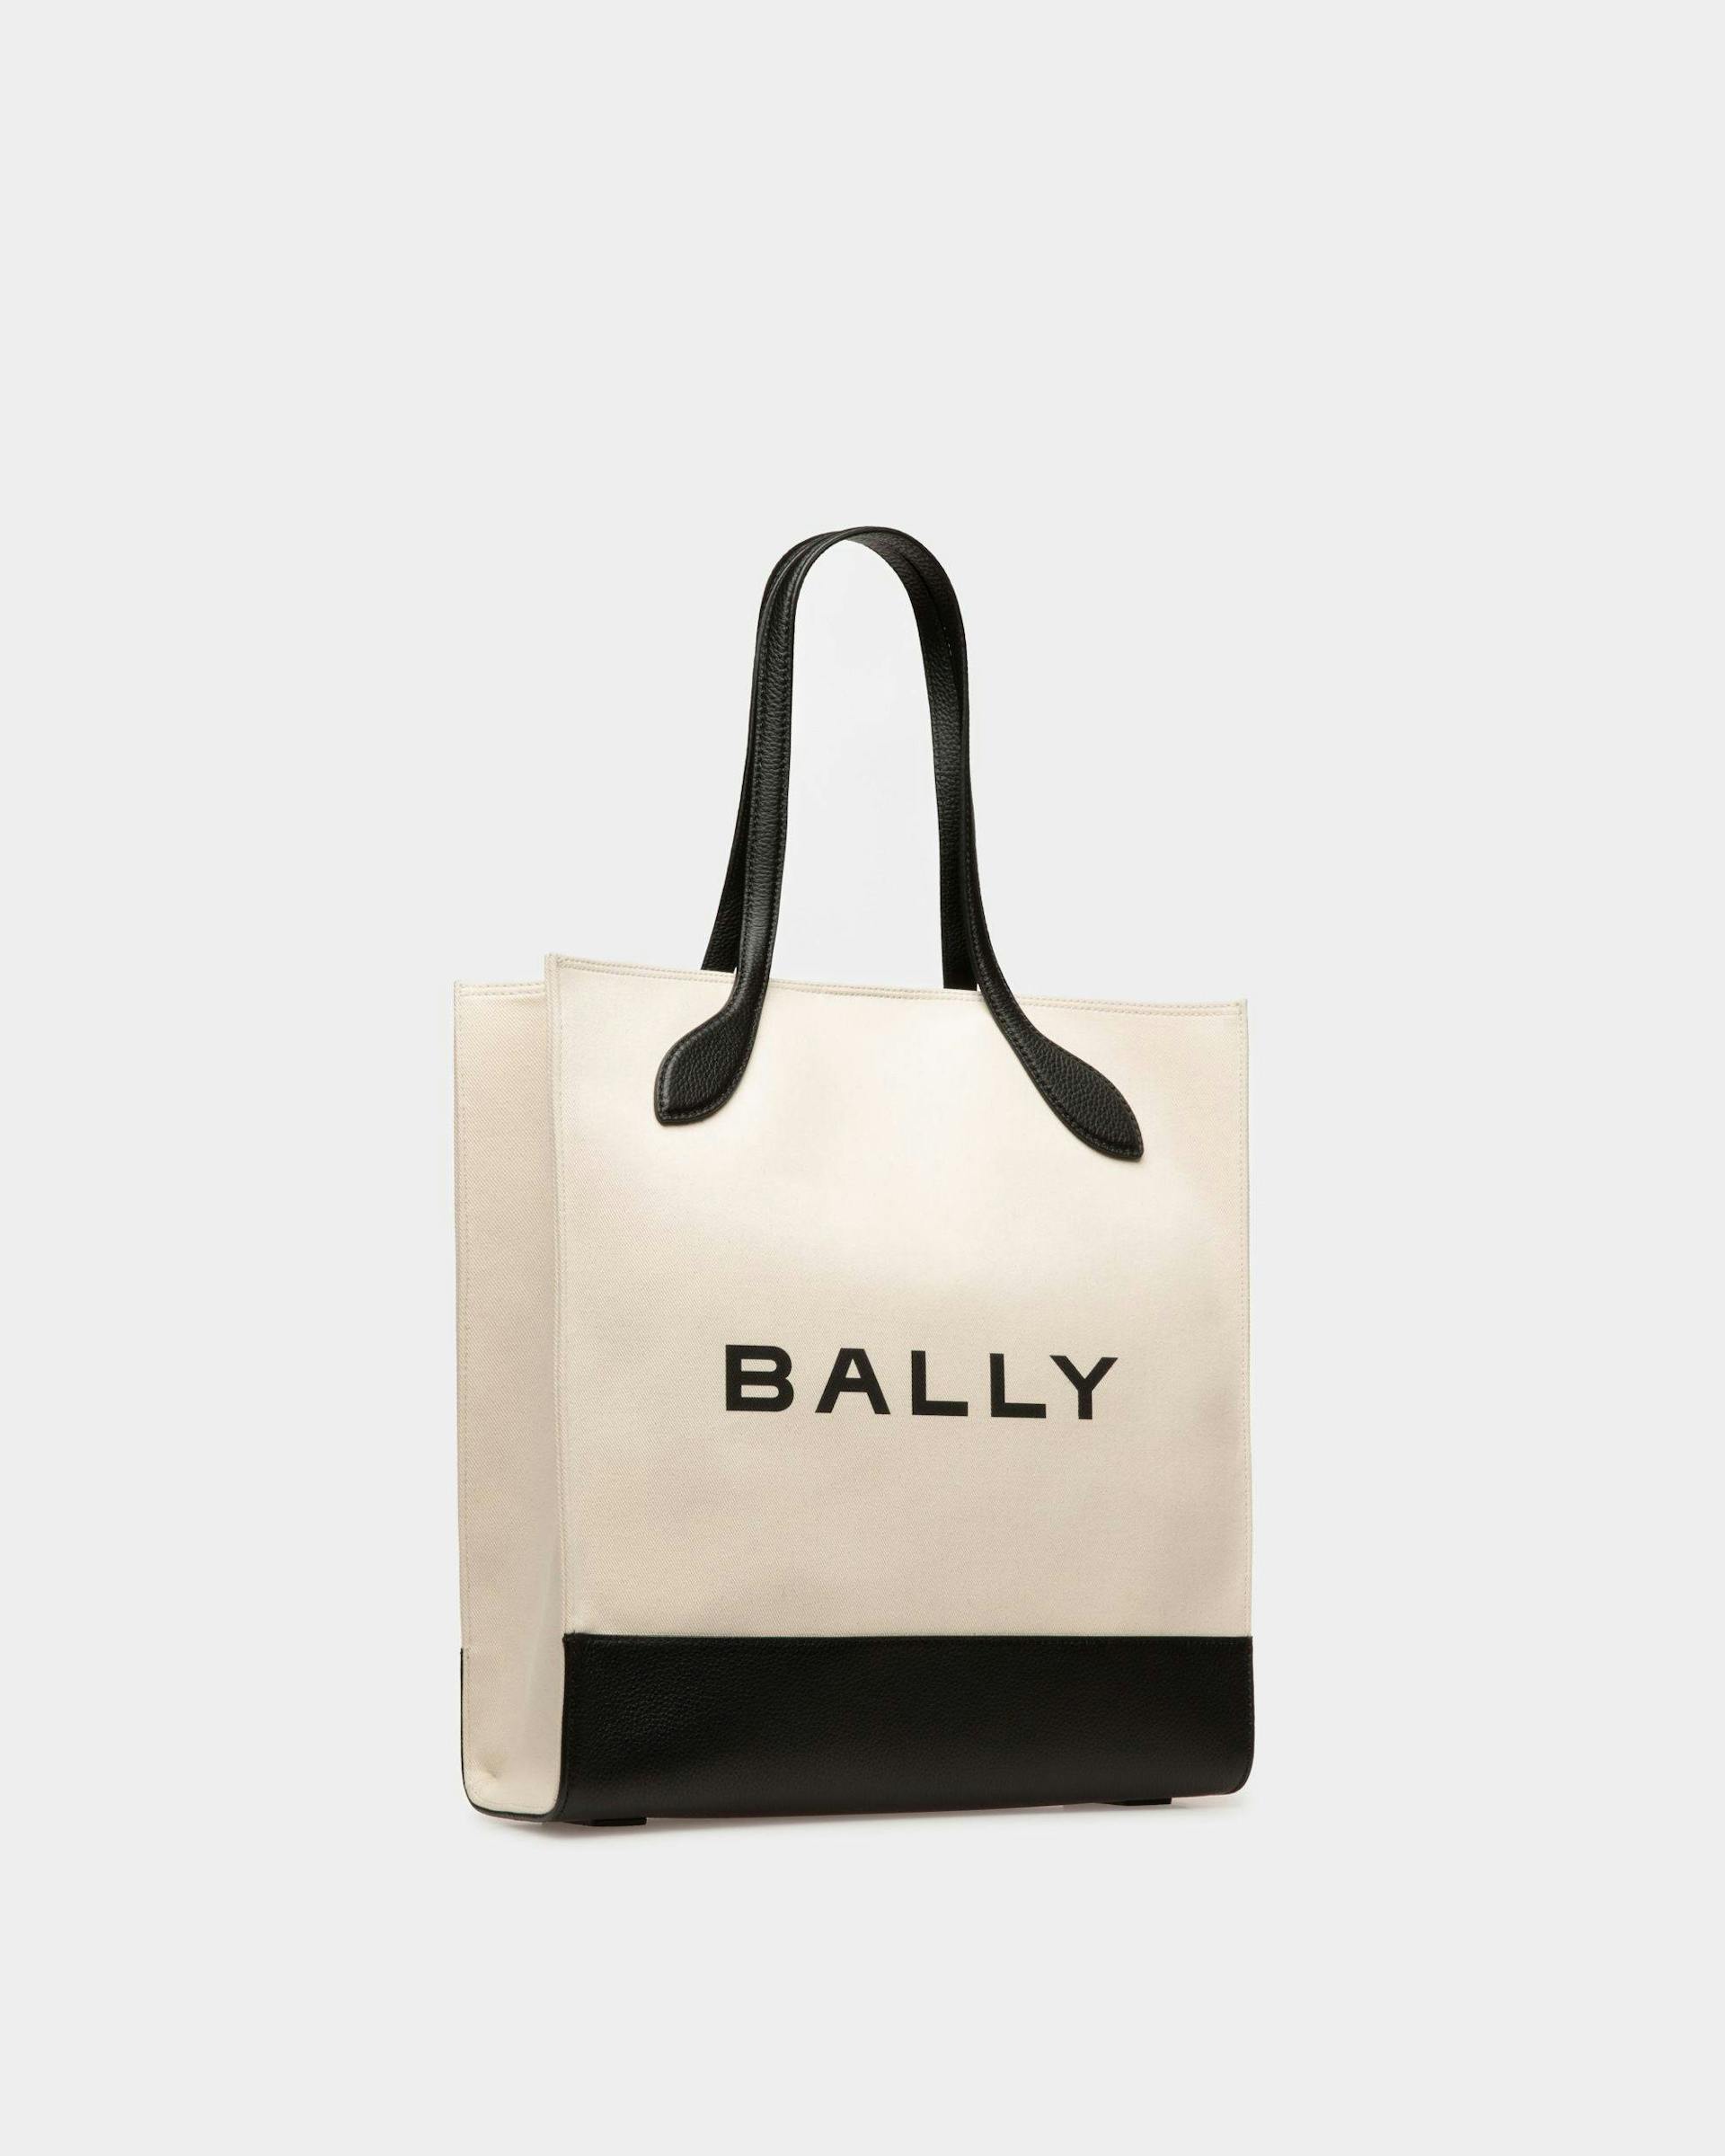 Tote Bag Bar In Tessuto Color Naturale E Nero - Donna - Bally - 03